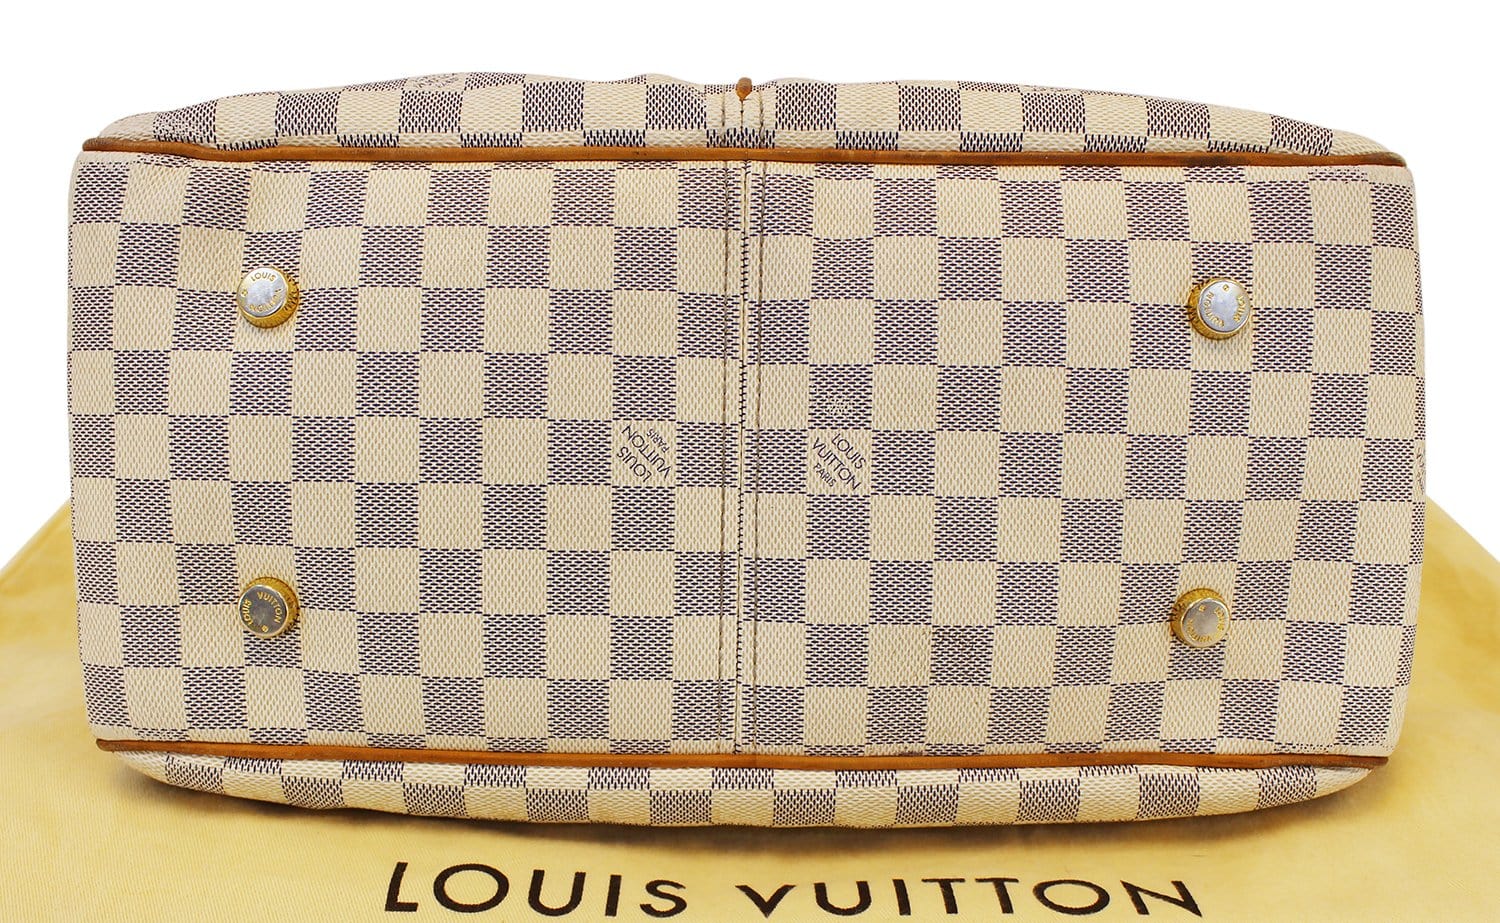 Louis Vuitton Figheri GM Damier Azur N41175 with original receipt